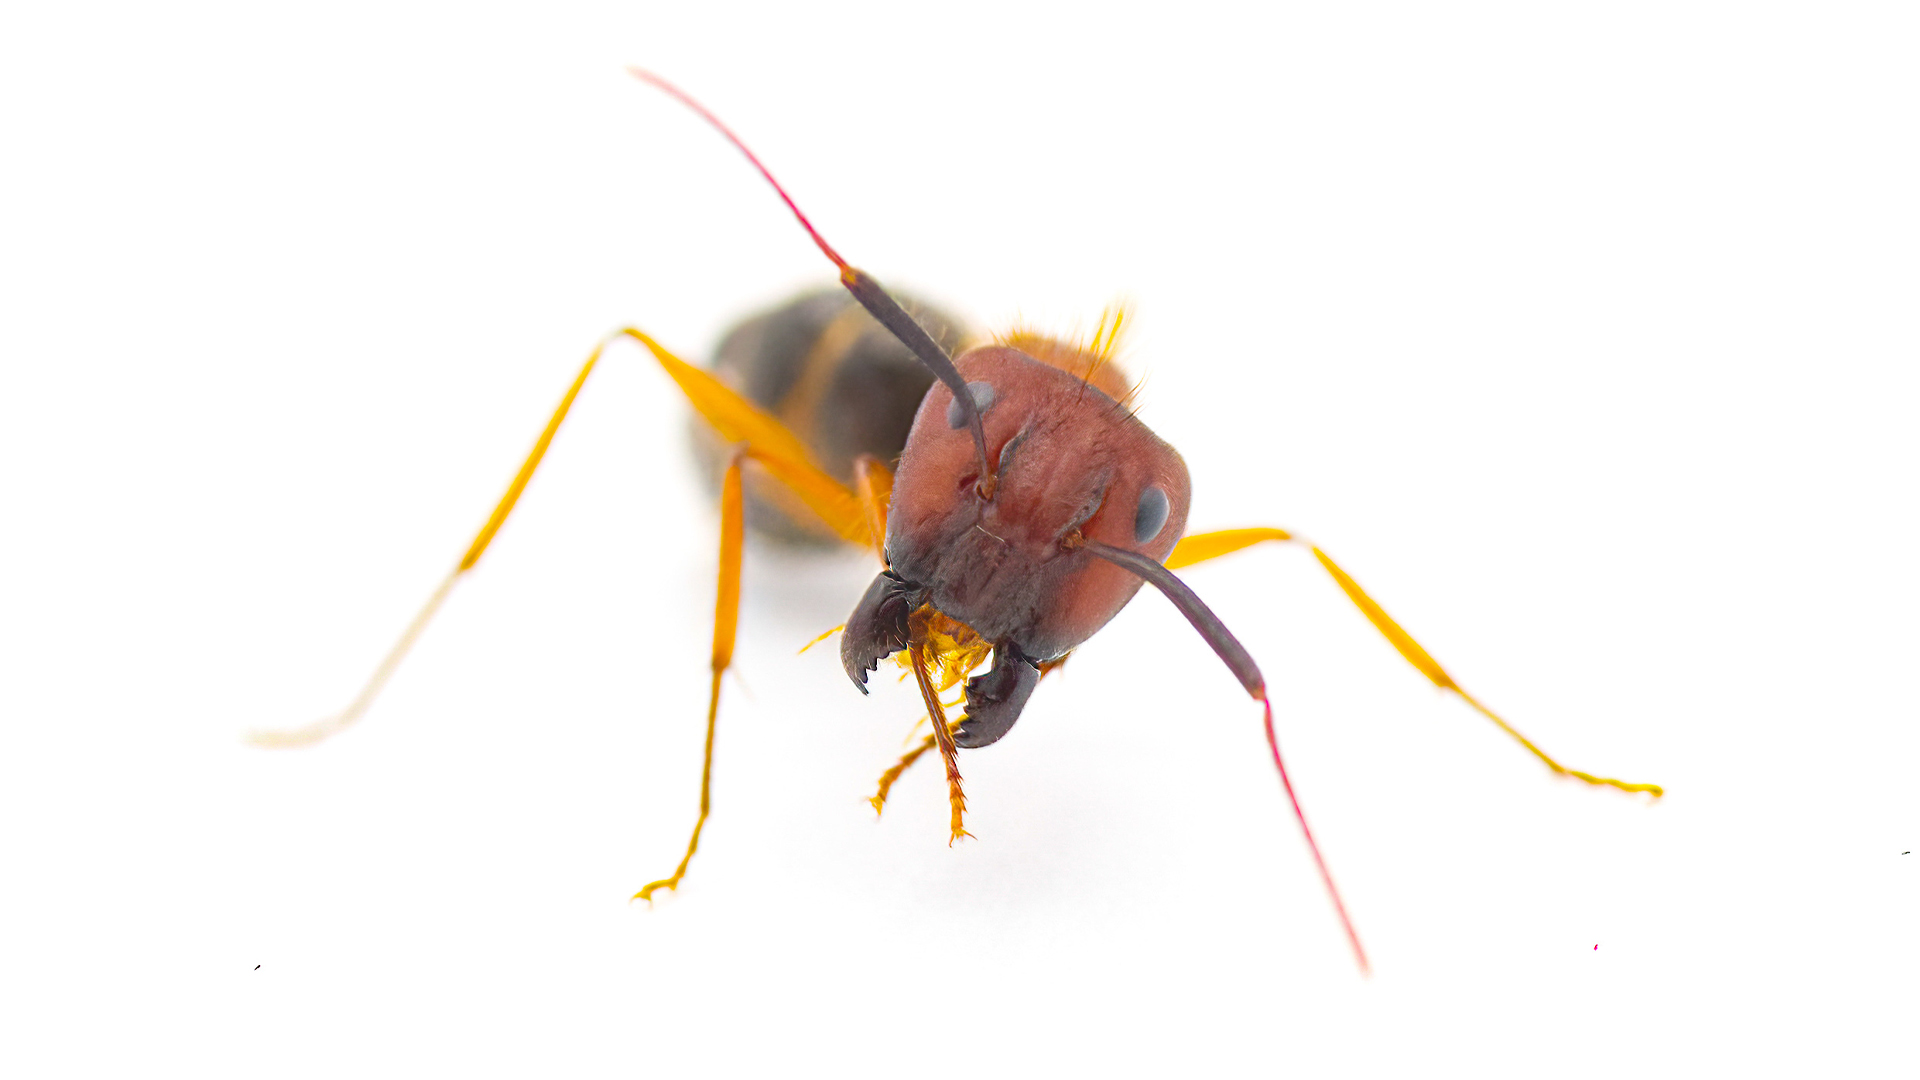 Des fourmis soldats transformées en butineuses par des scientifiques reprogrammant leur cerveau